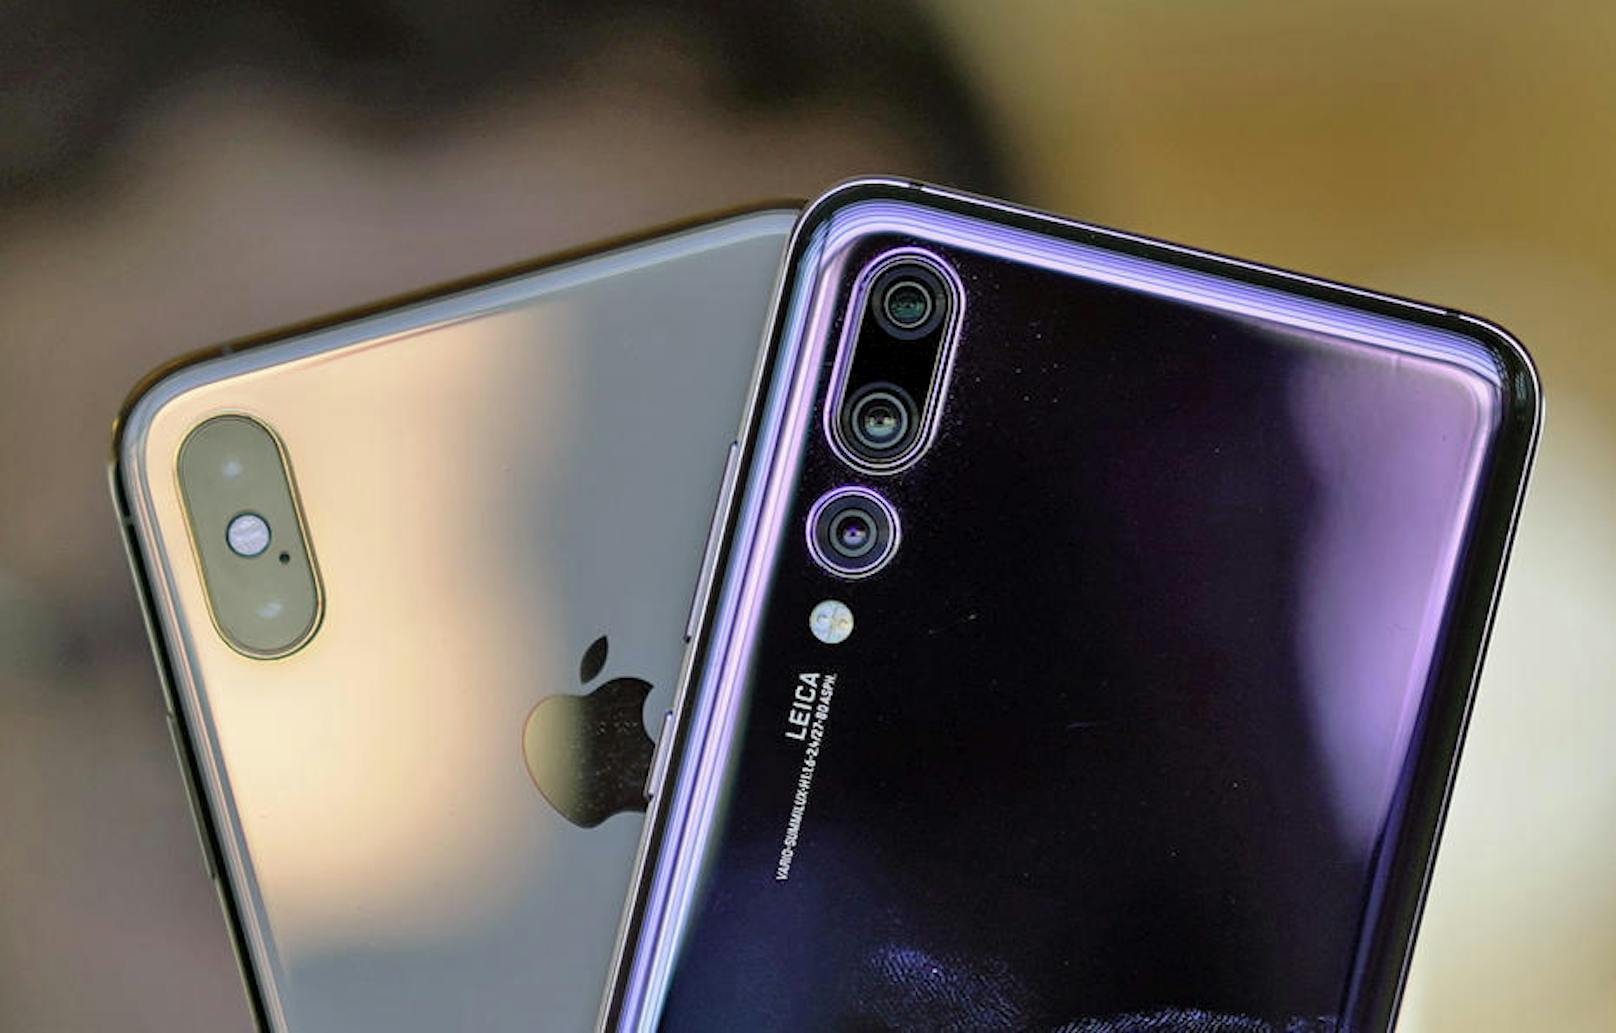 Als derzeitiger Kamera-König unter den Smartphones gilt das Huawei P20 Pro. Die folgenden Fotos zeigen, wie Apples neuestes Gerät gegen das Android-Handy abschneidet.